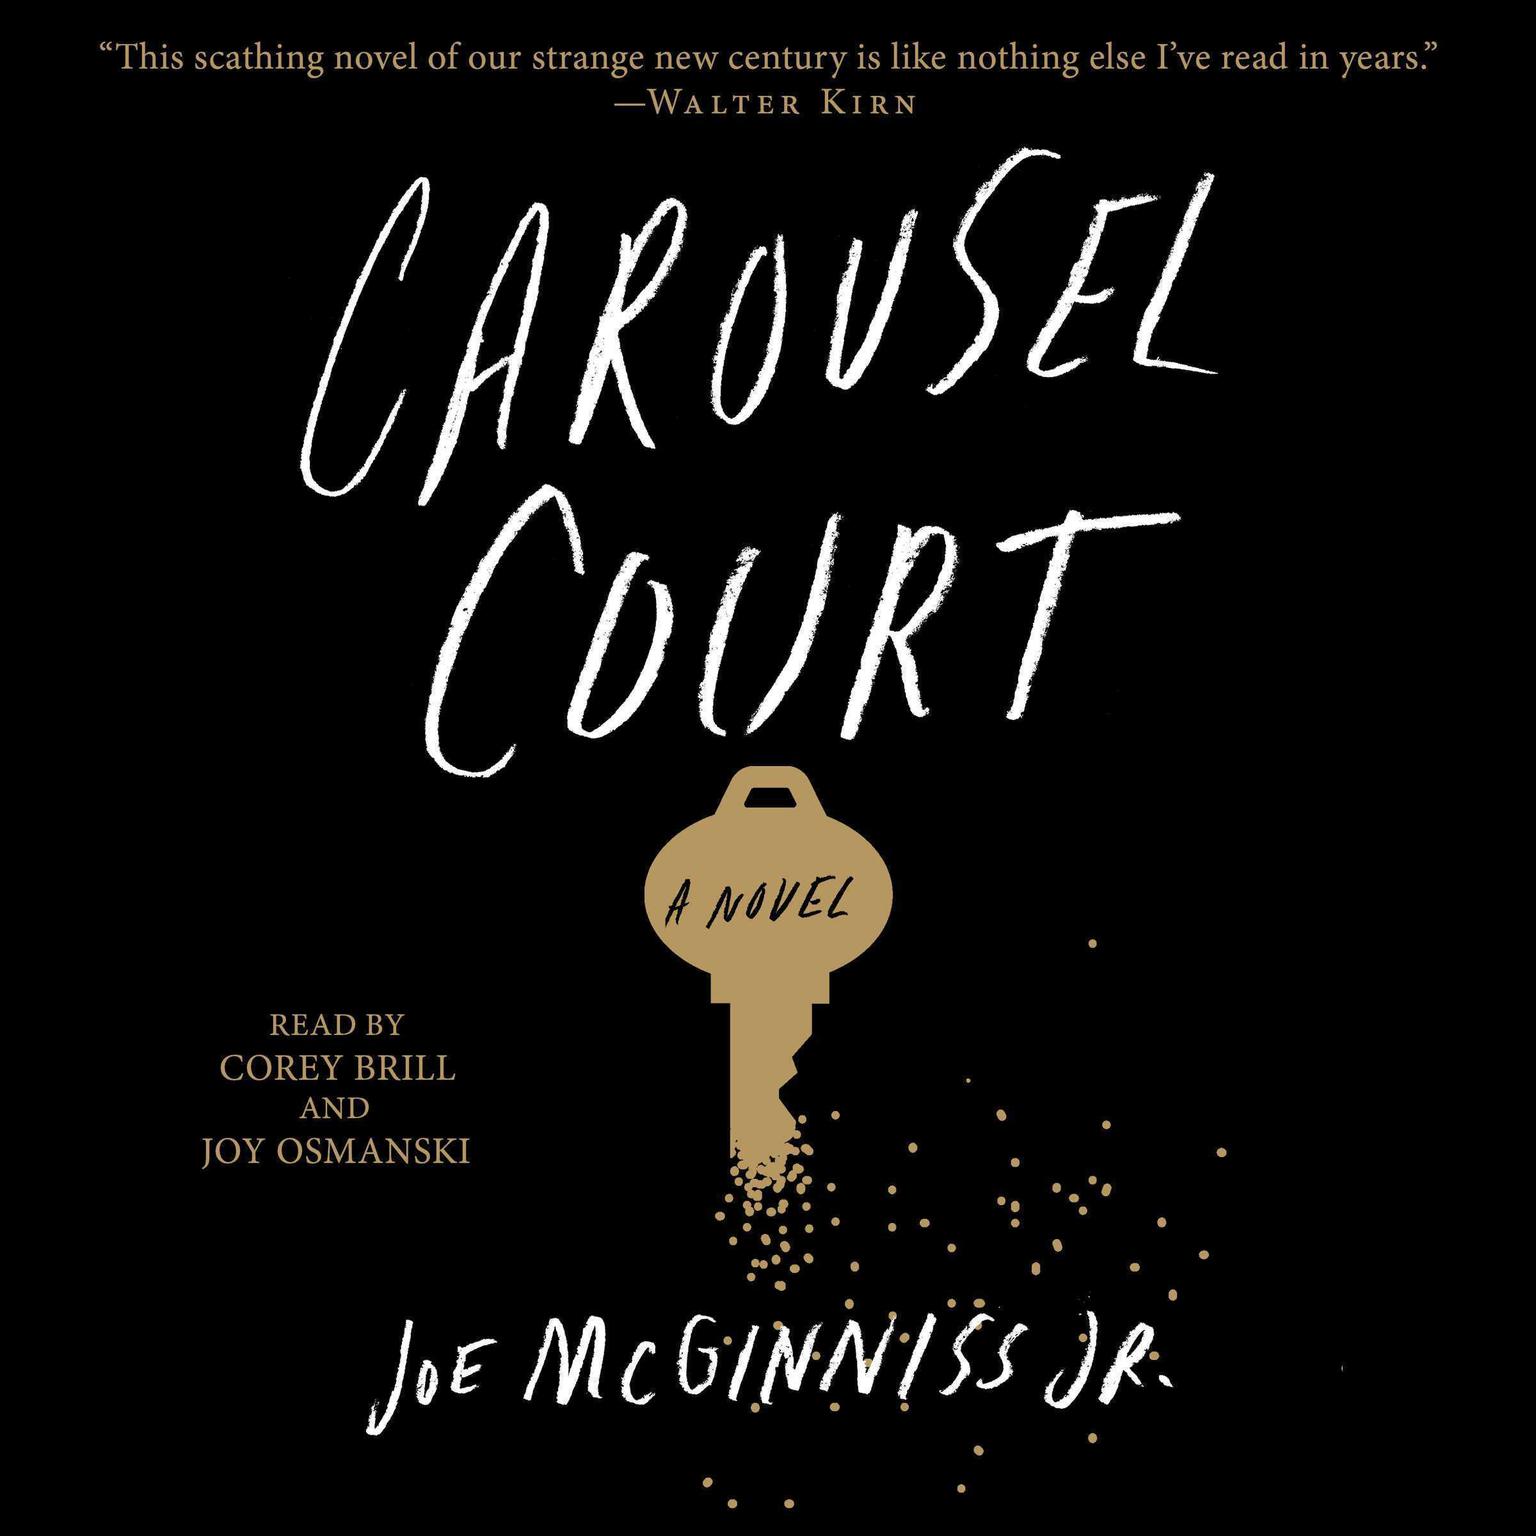 Carousel Court: A Novel Audiobook, by Joe McGinniss